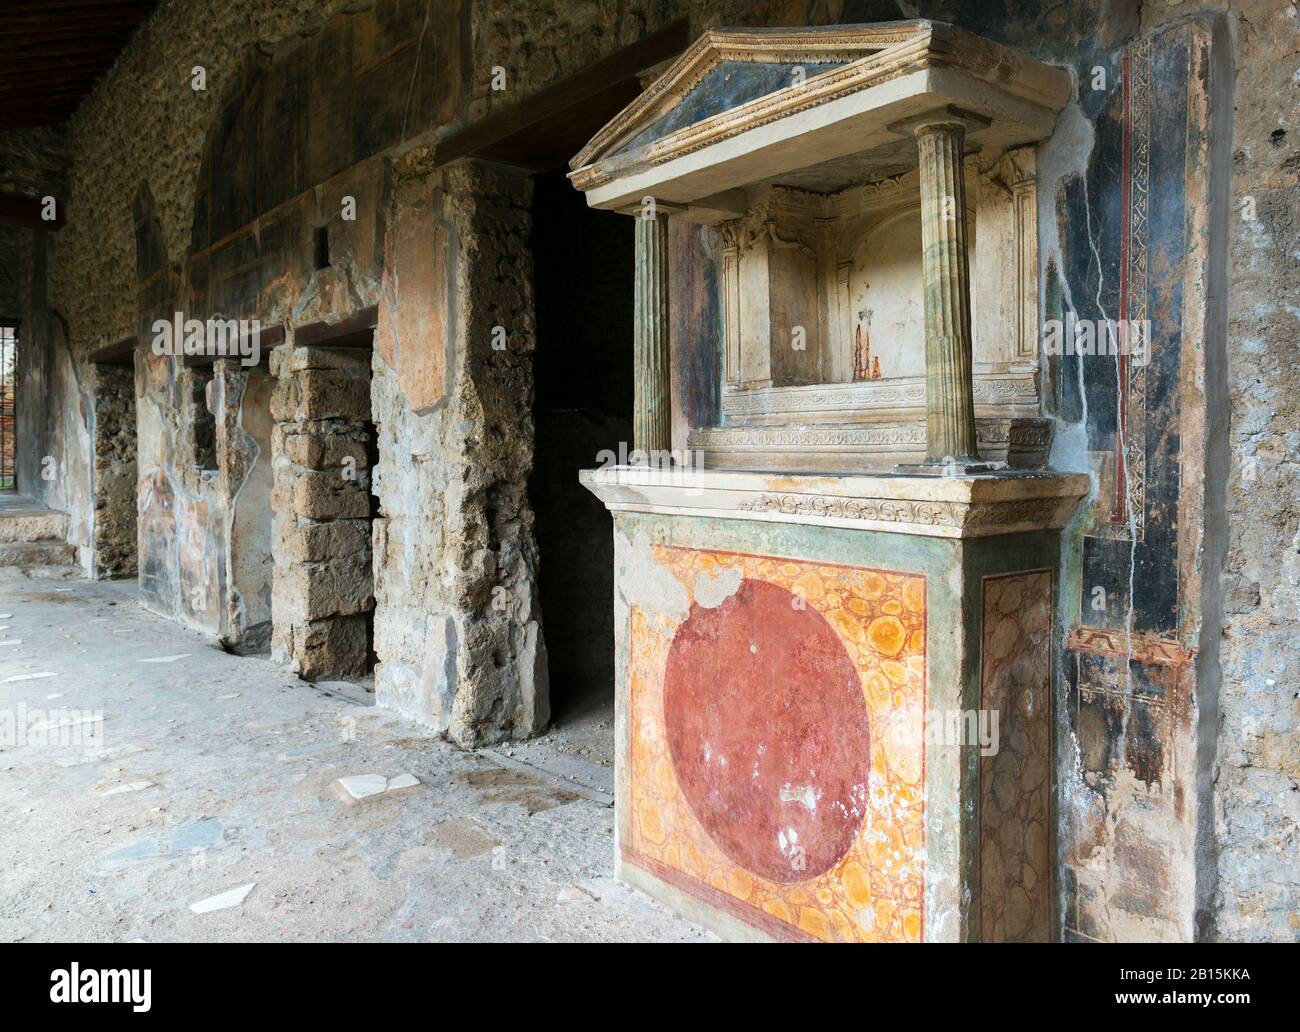 Ruinen eines Hauses in Pompeji. Pompeji ist eine antike römische Stadt, die durch den Ausbruch des Vesuvs im Jahr 79 n. Chr. starb. Stockfoto